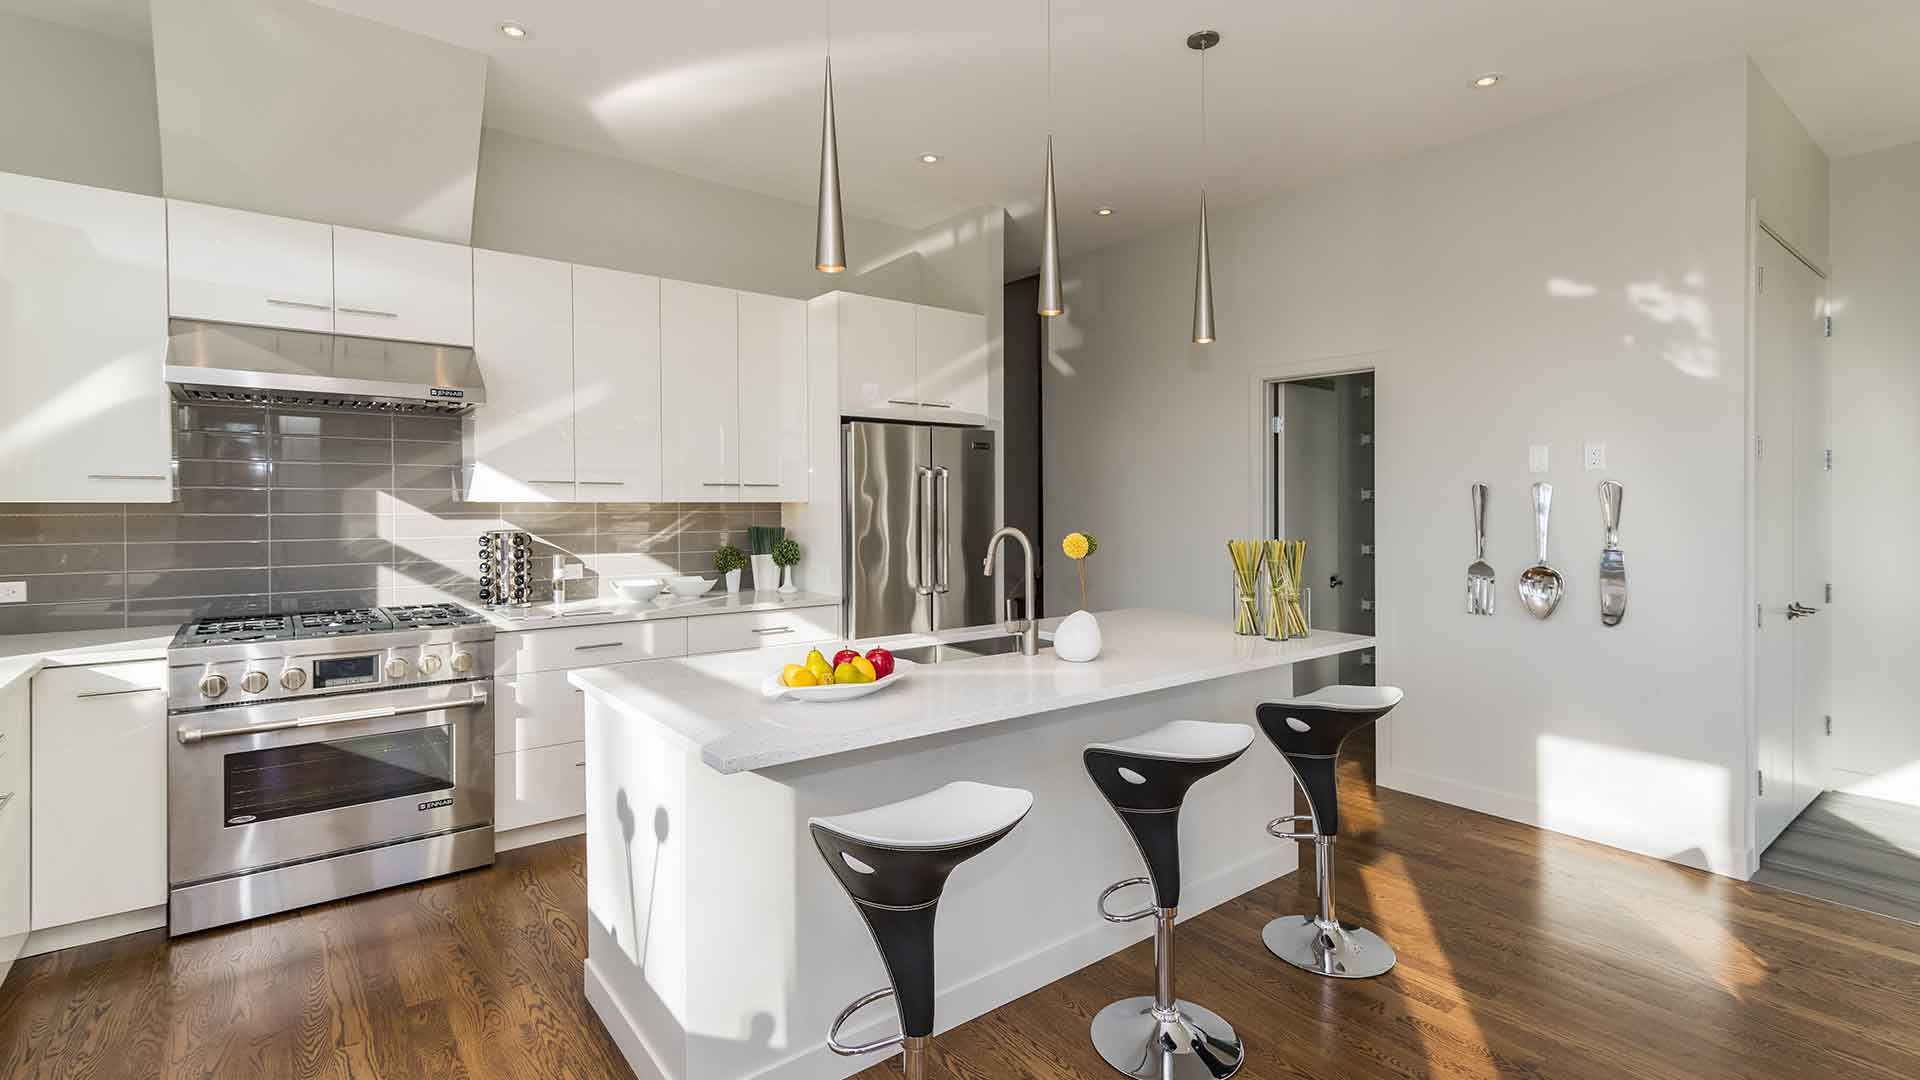 kitchen interior design photos free download